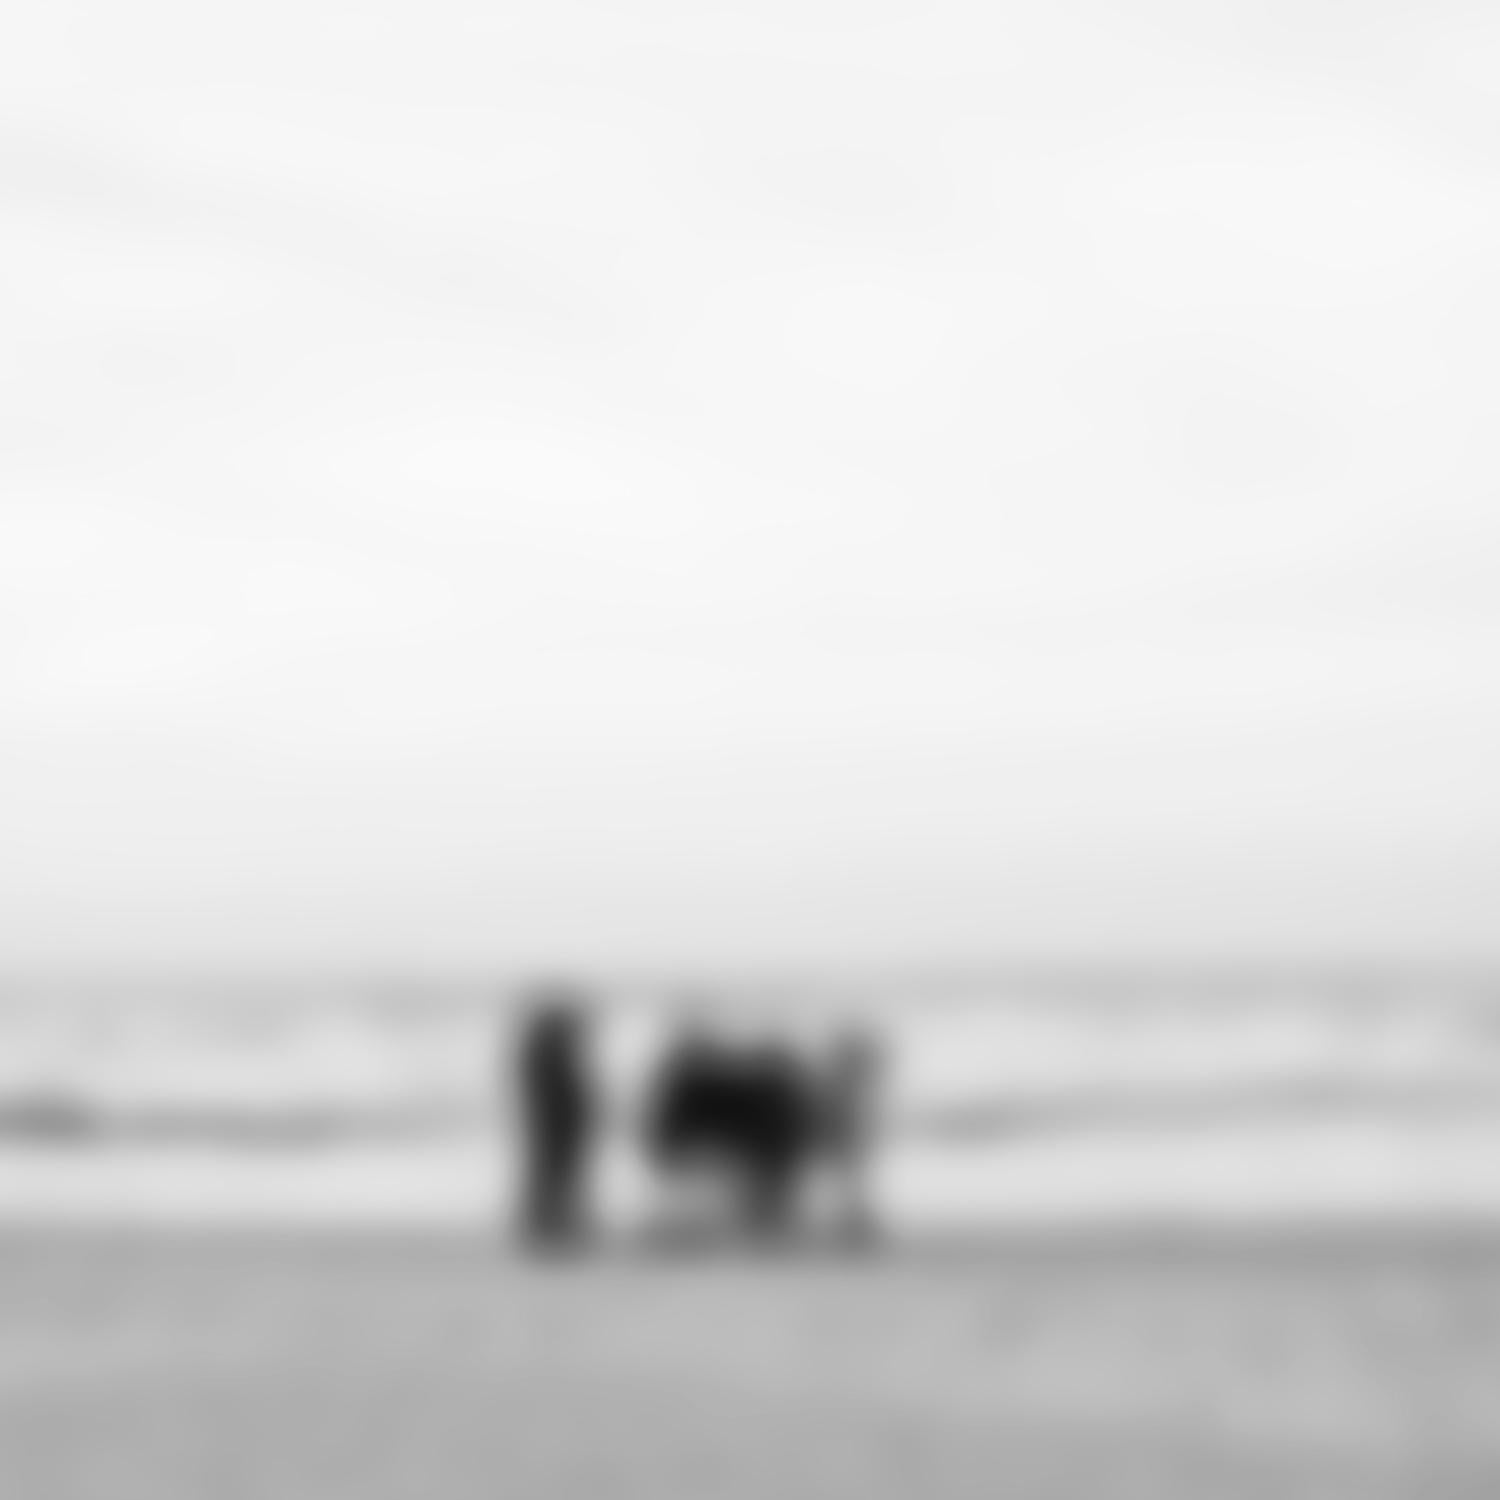 People on the Beach - zeitgenössische abstrakte Fotografie von Strandleben und Meer – Photograph von Michael Götze